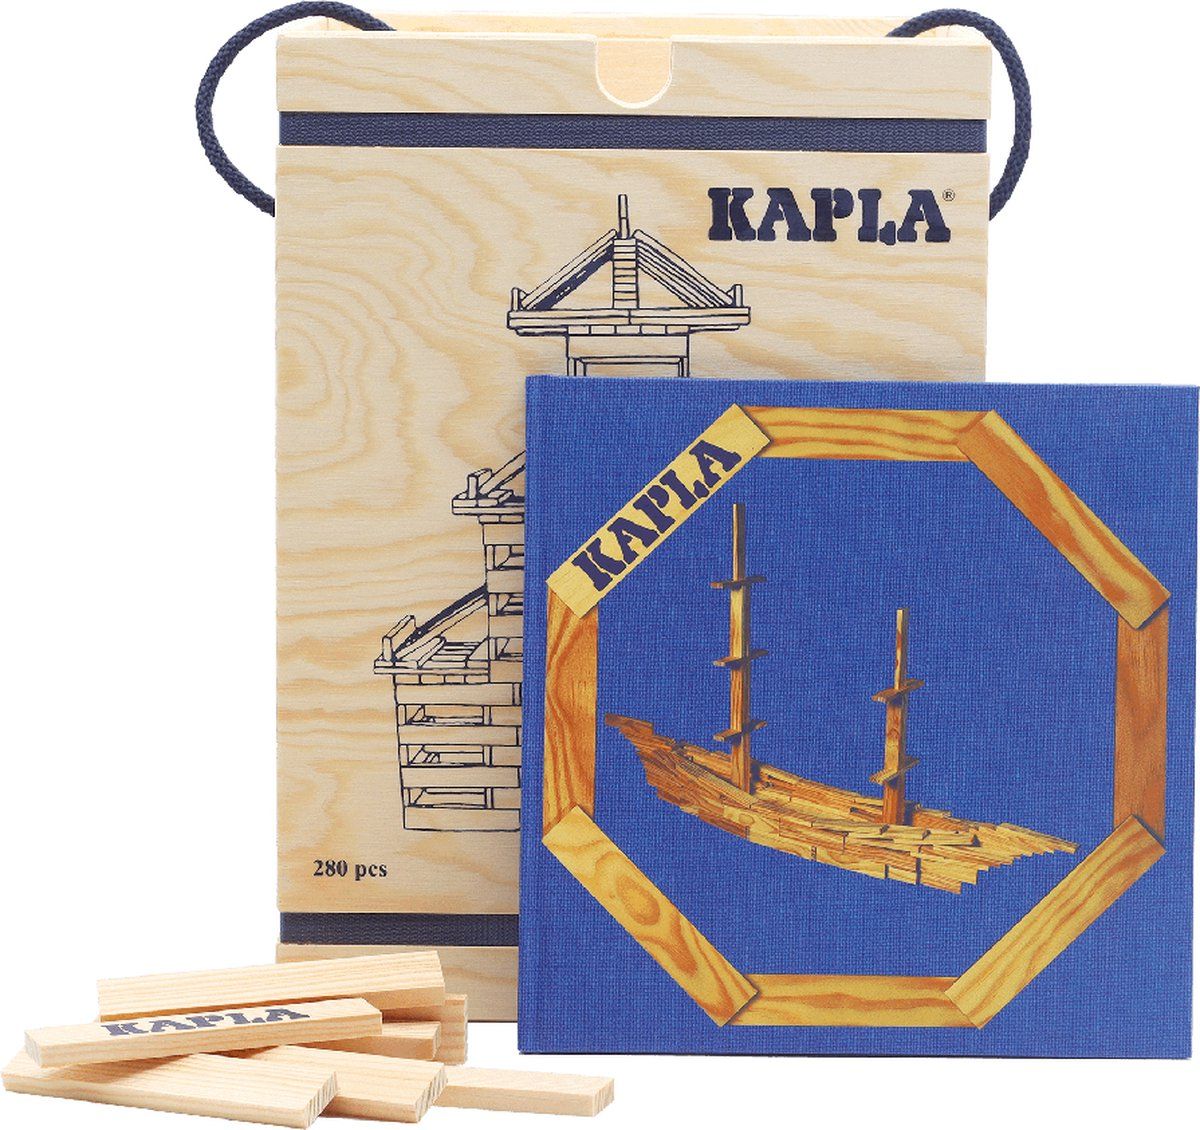 kapla-kapla-blank-constructiespeelgoed-blauw-voorbeeldboek-280-plankjes